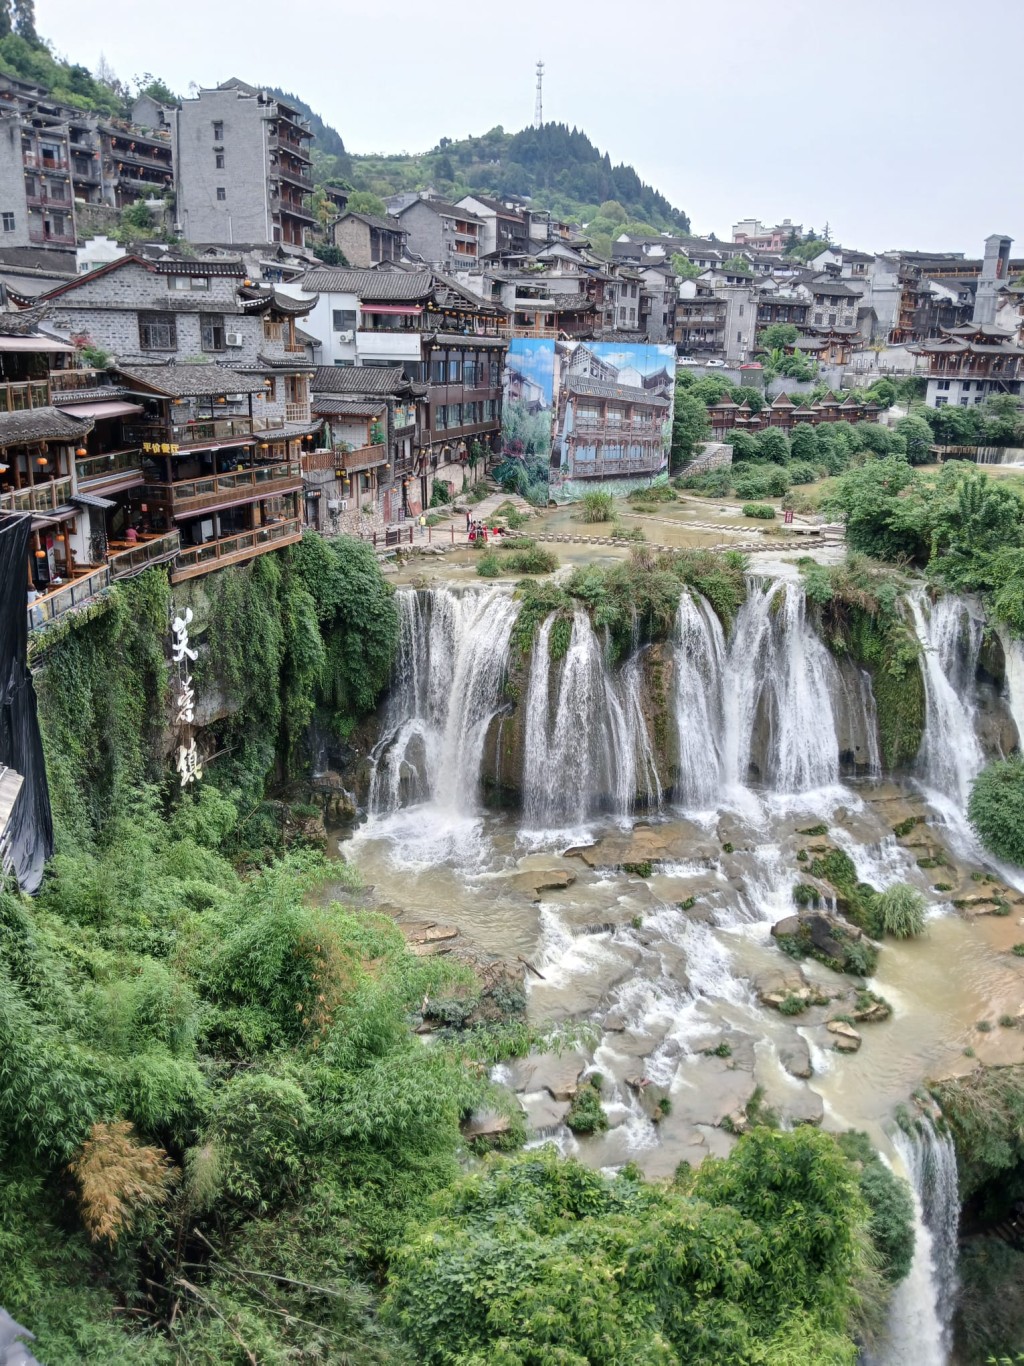 挂在瀑布上的千年古镇——芙蓉镇。